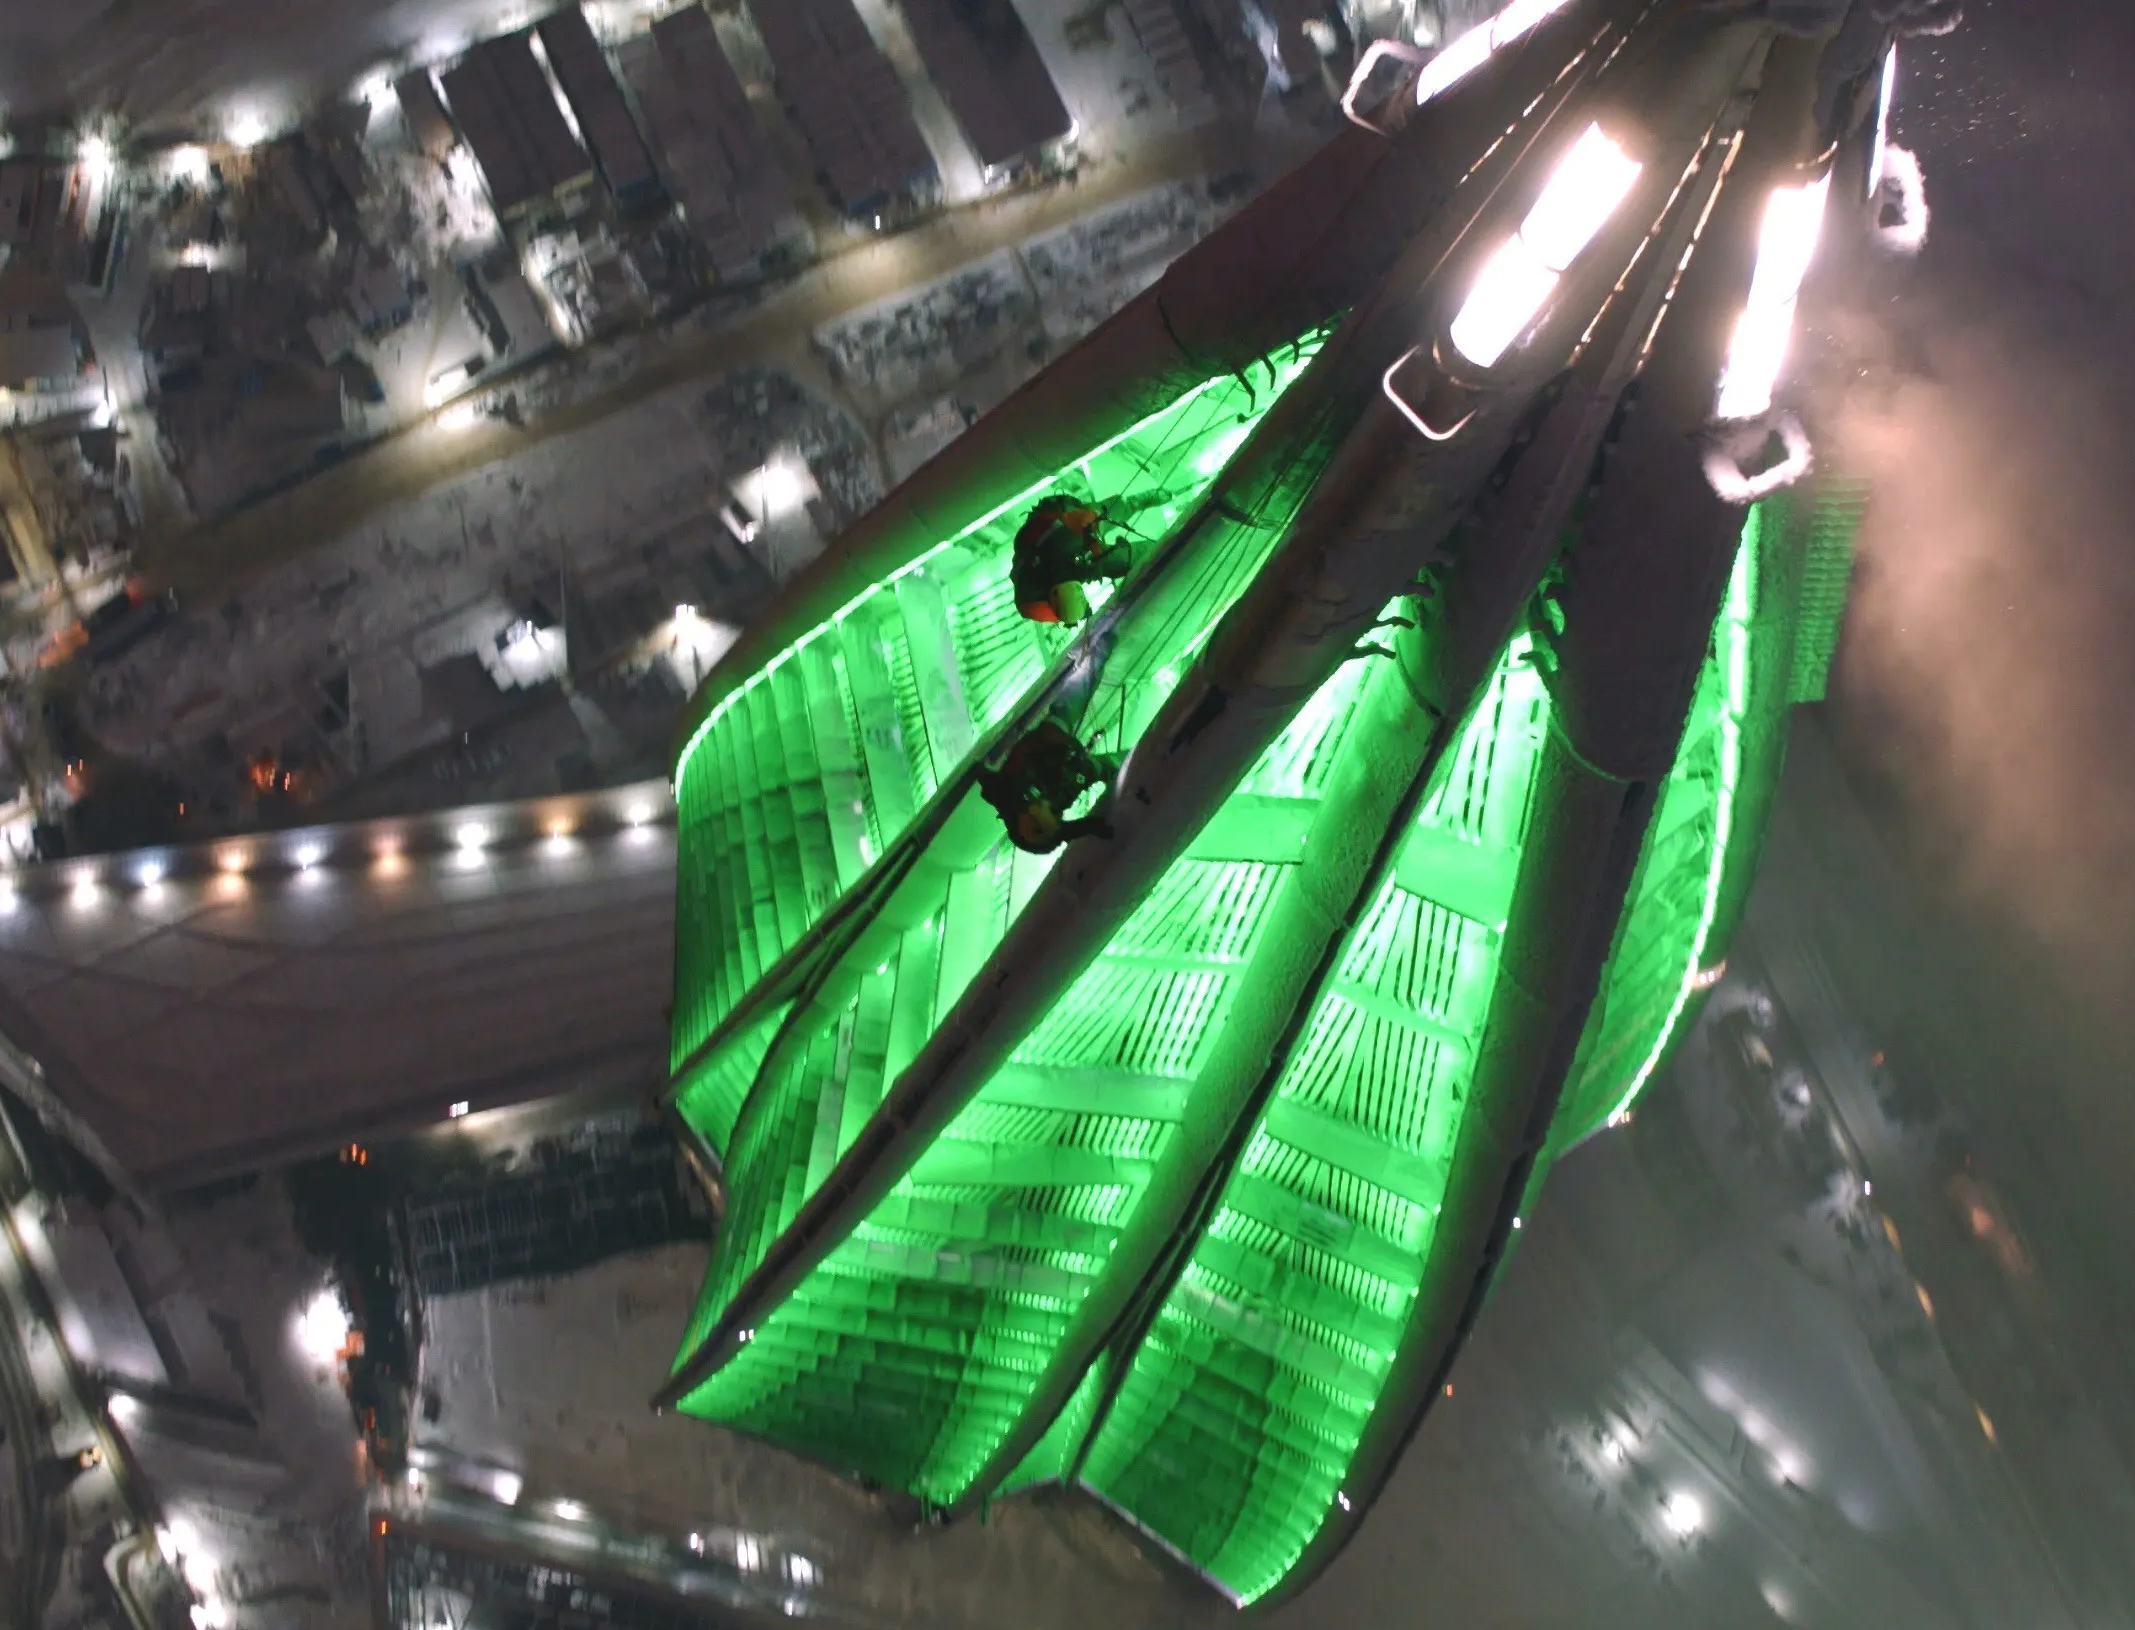 Видео дня: Лахта Центр стал изумрудным в честь дня зеленого цвета